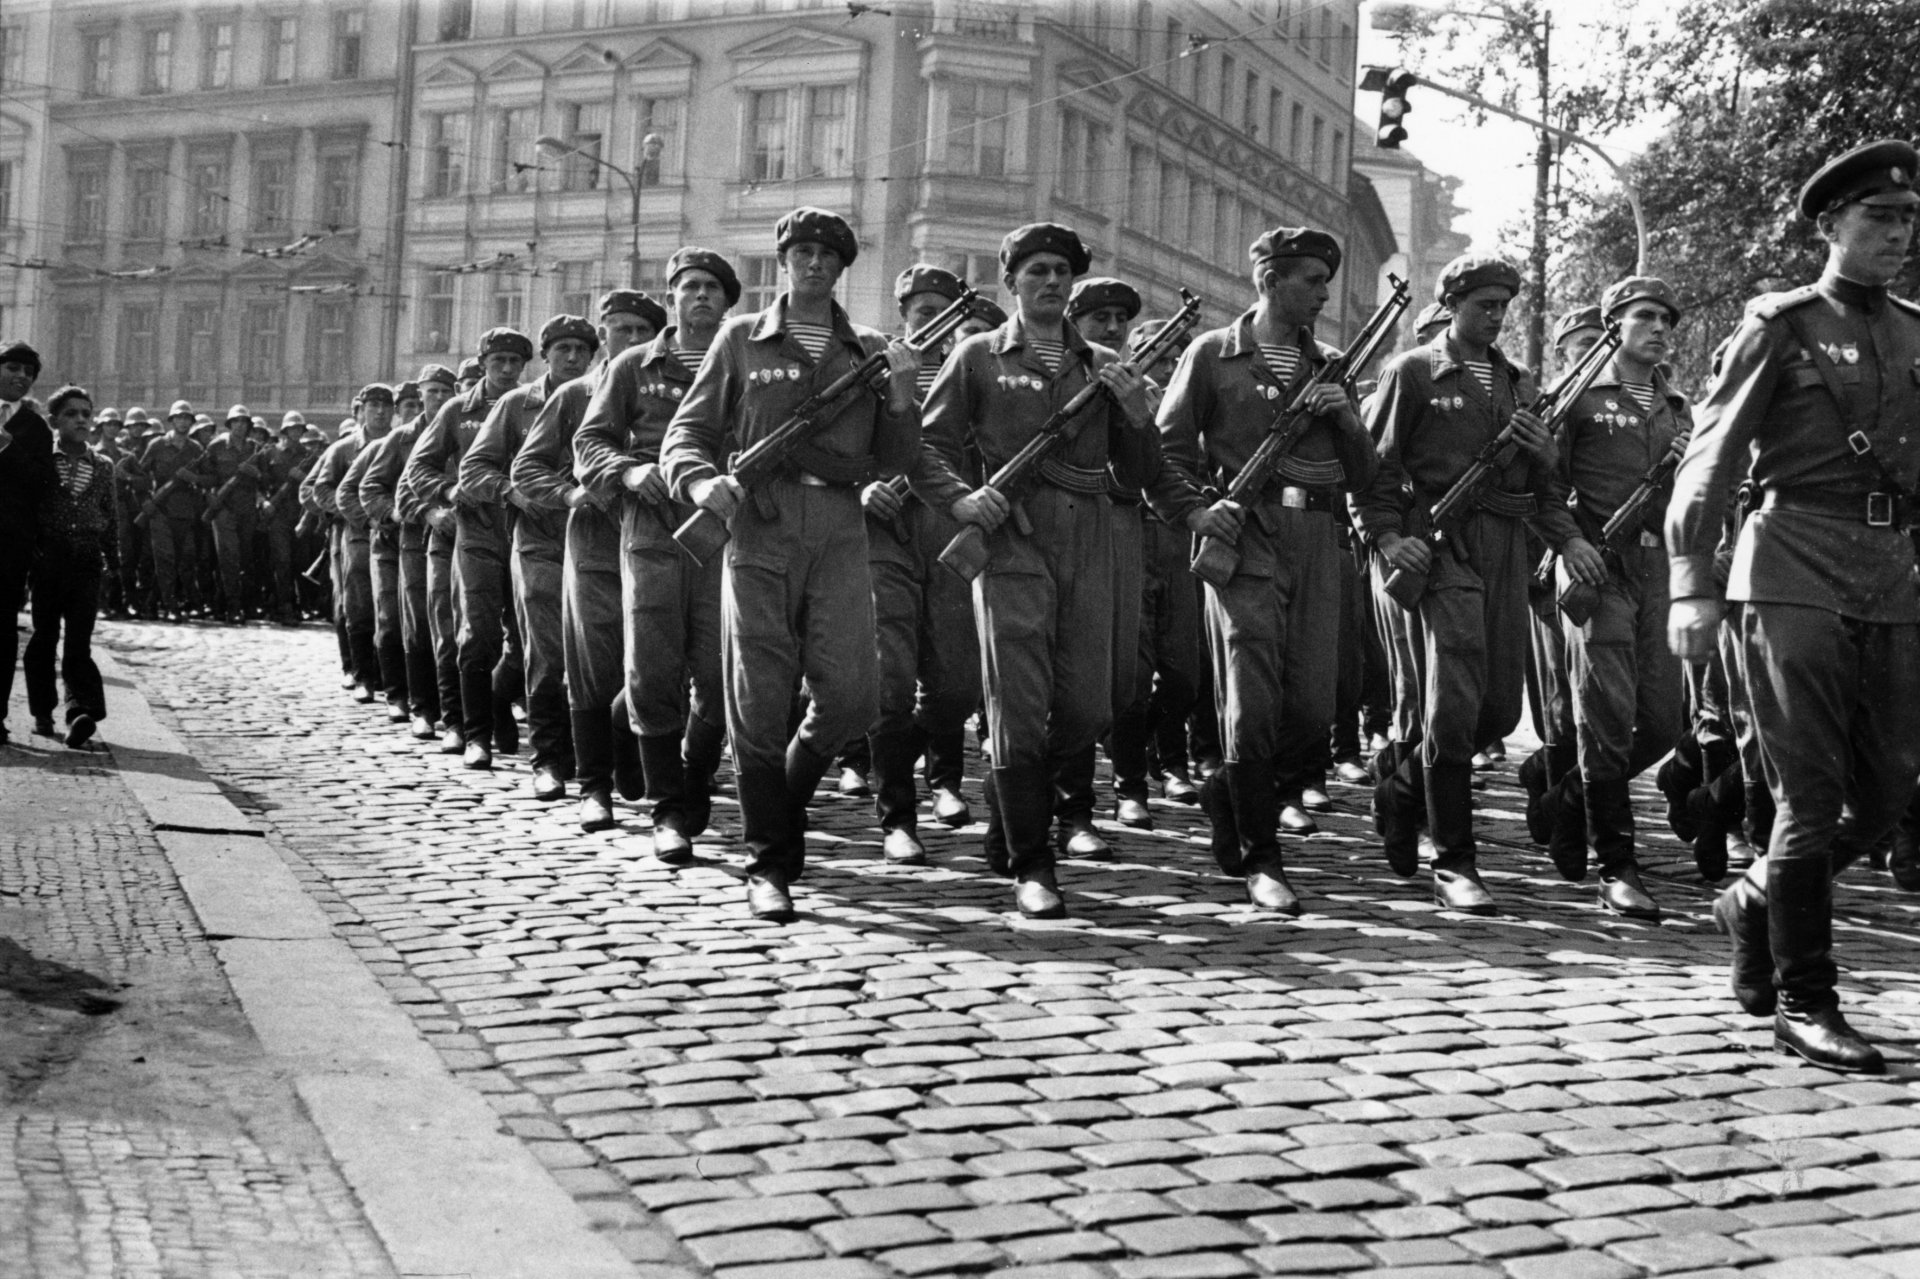 10 септември 1968 г. - съветските войски маршируват в Прага по време на Пражката пролет 